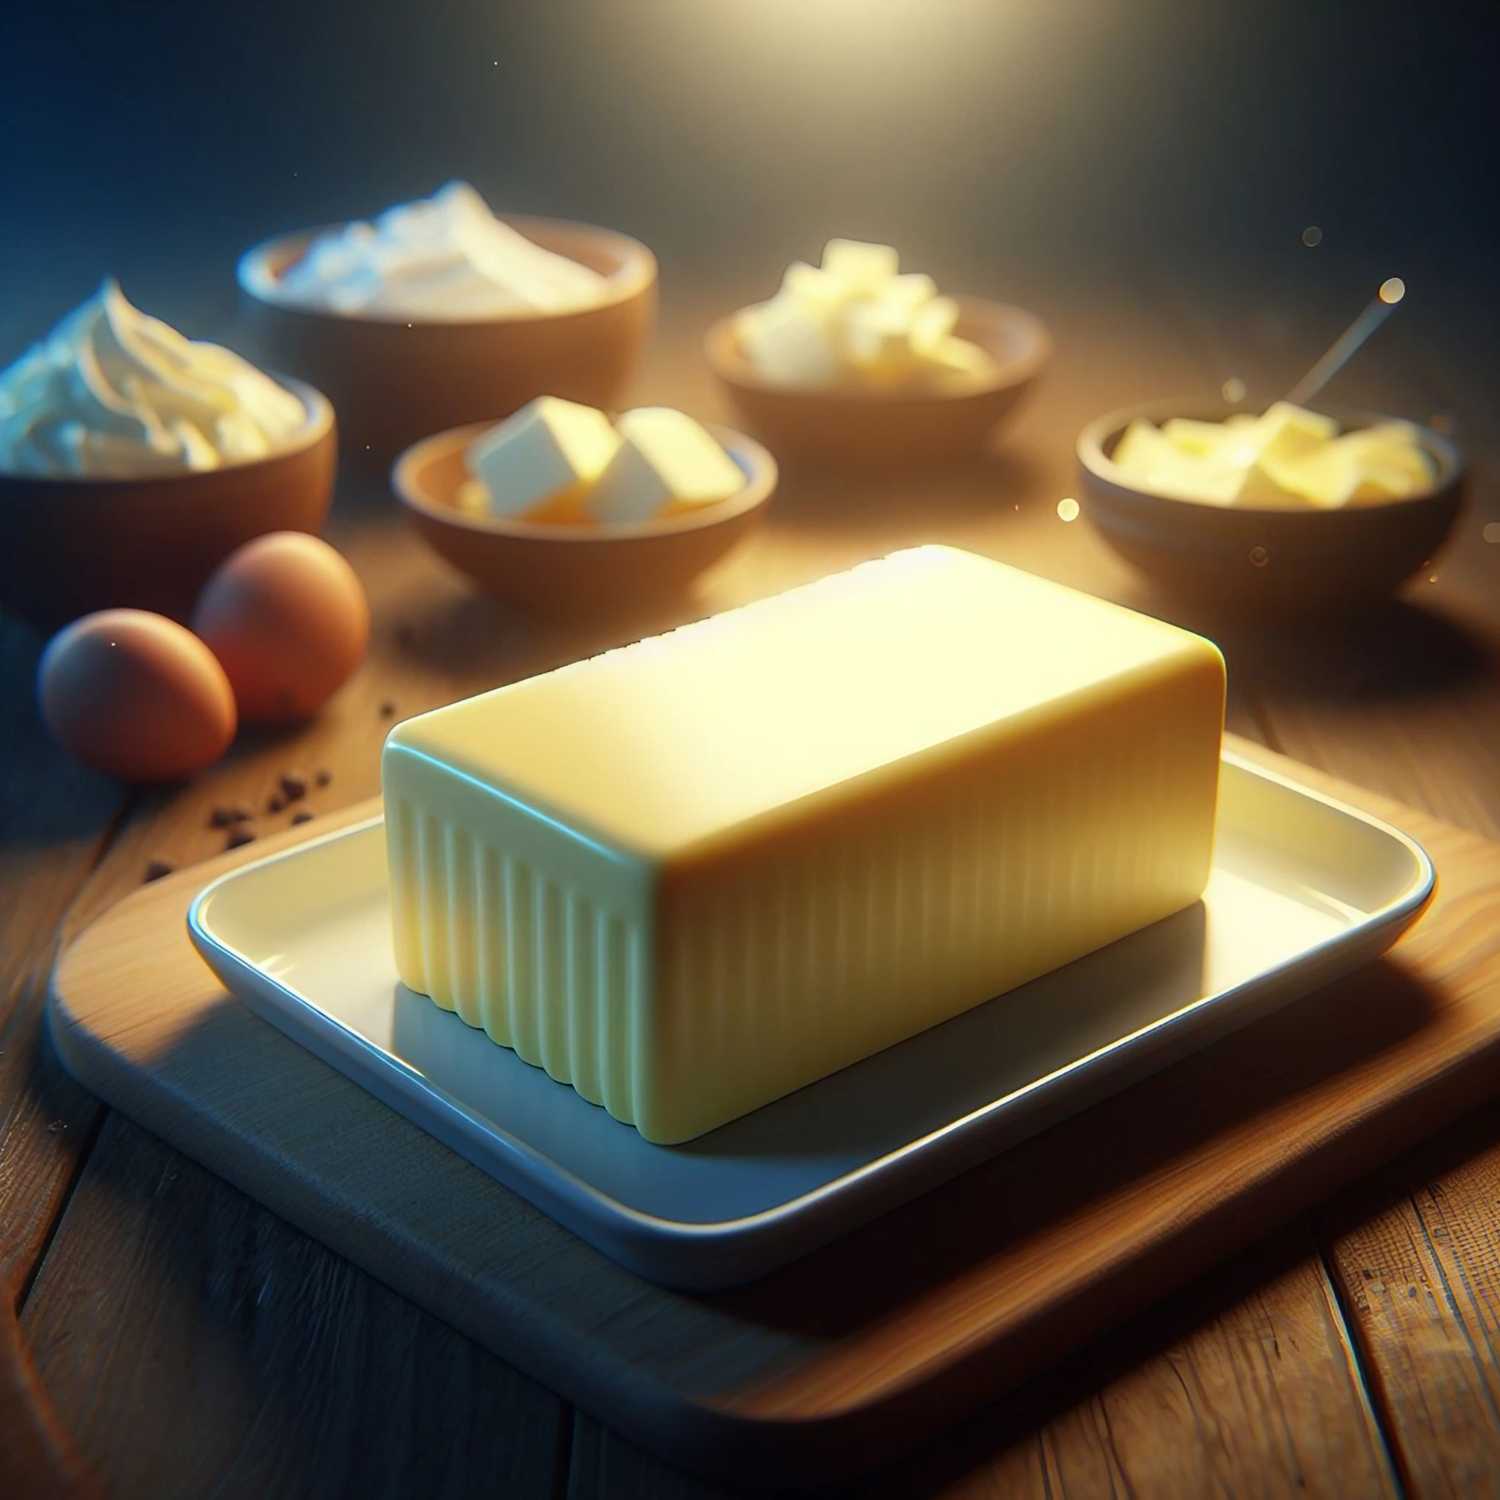 41: Butter